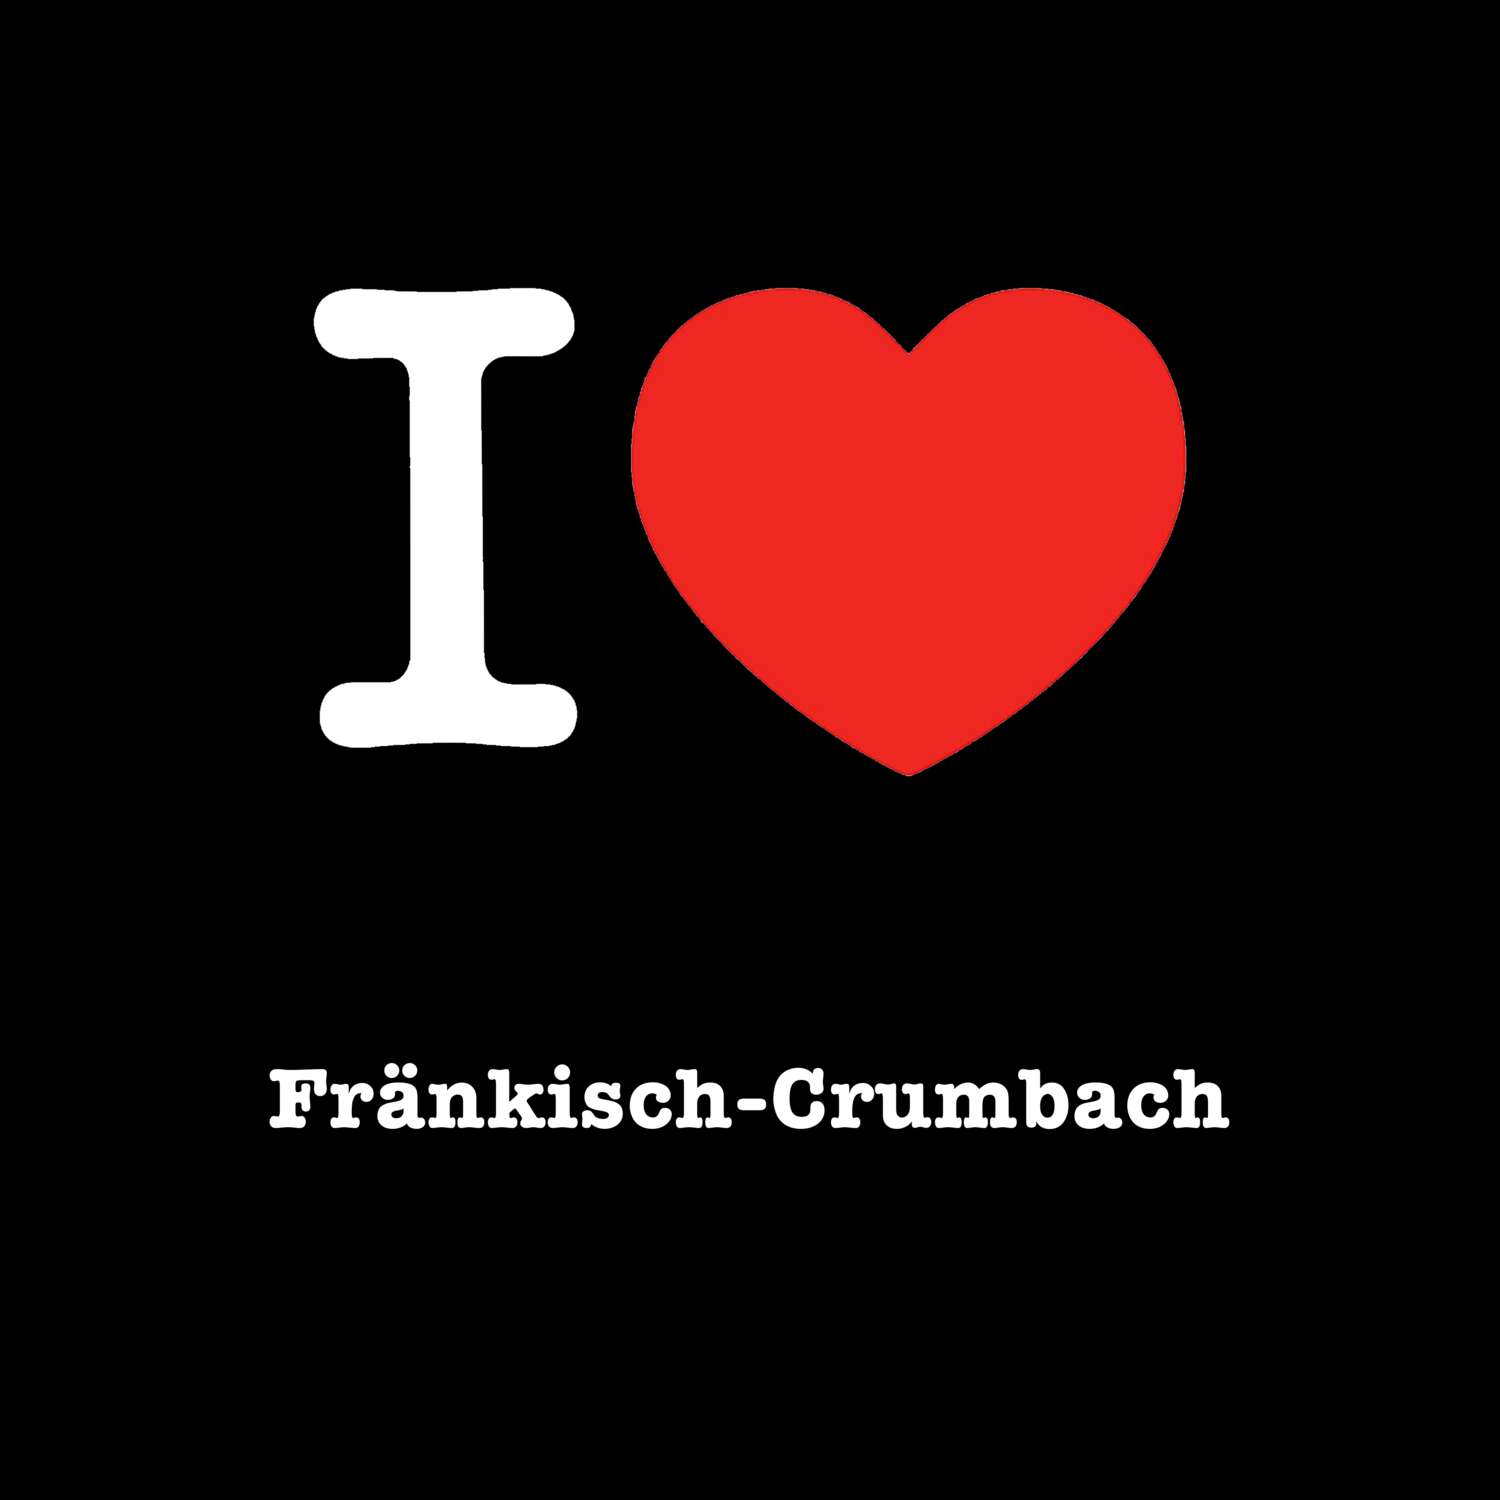 Fränkisch-Crumbach T-Shirt »I love«